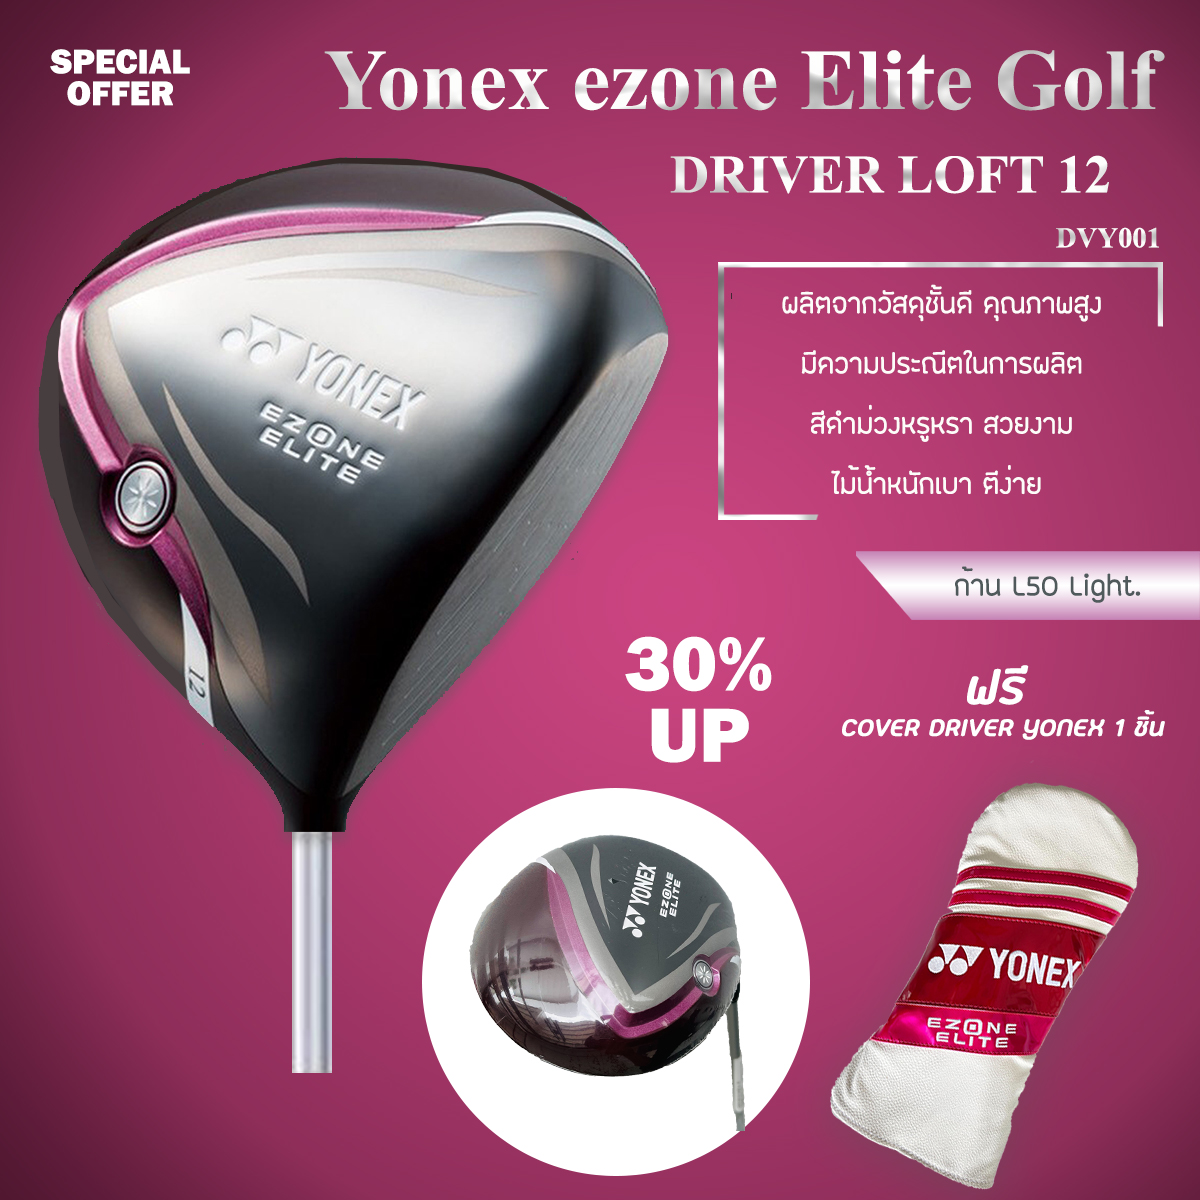 ไม้กอล์ฟ DRIVER สำหรับสุภาพสตรี LOFT 12 YN ezone Elite Golf -ก้าน L50 Light ฟรีปลอกหุ้มไม้กอล์ฟสีม่วงขาว สุดสวย (DVY001)